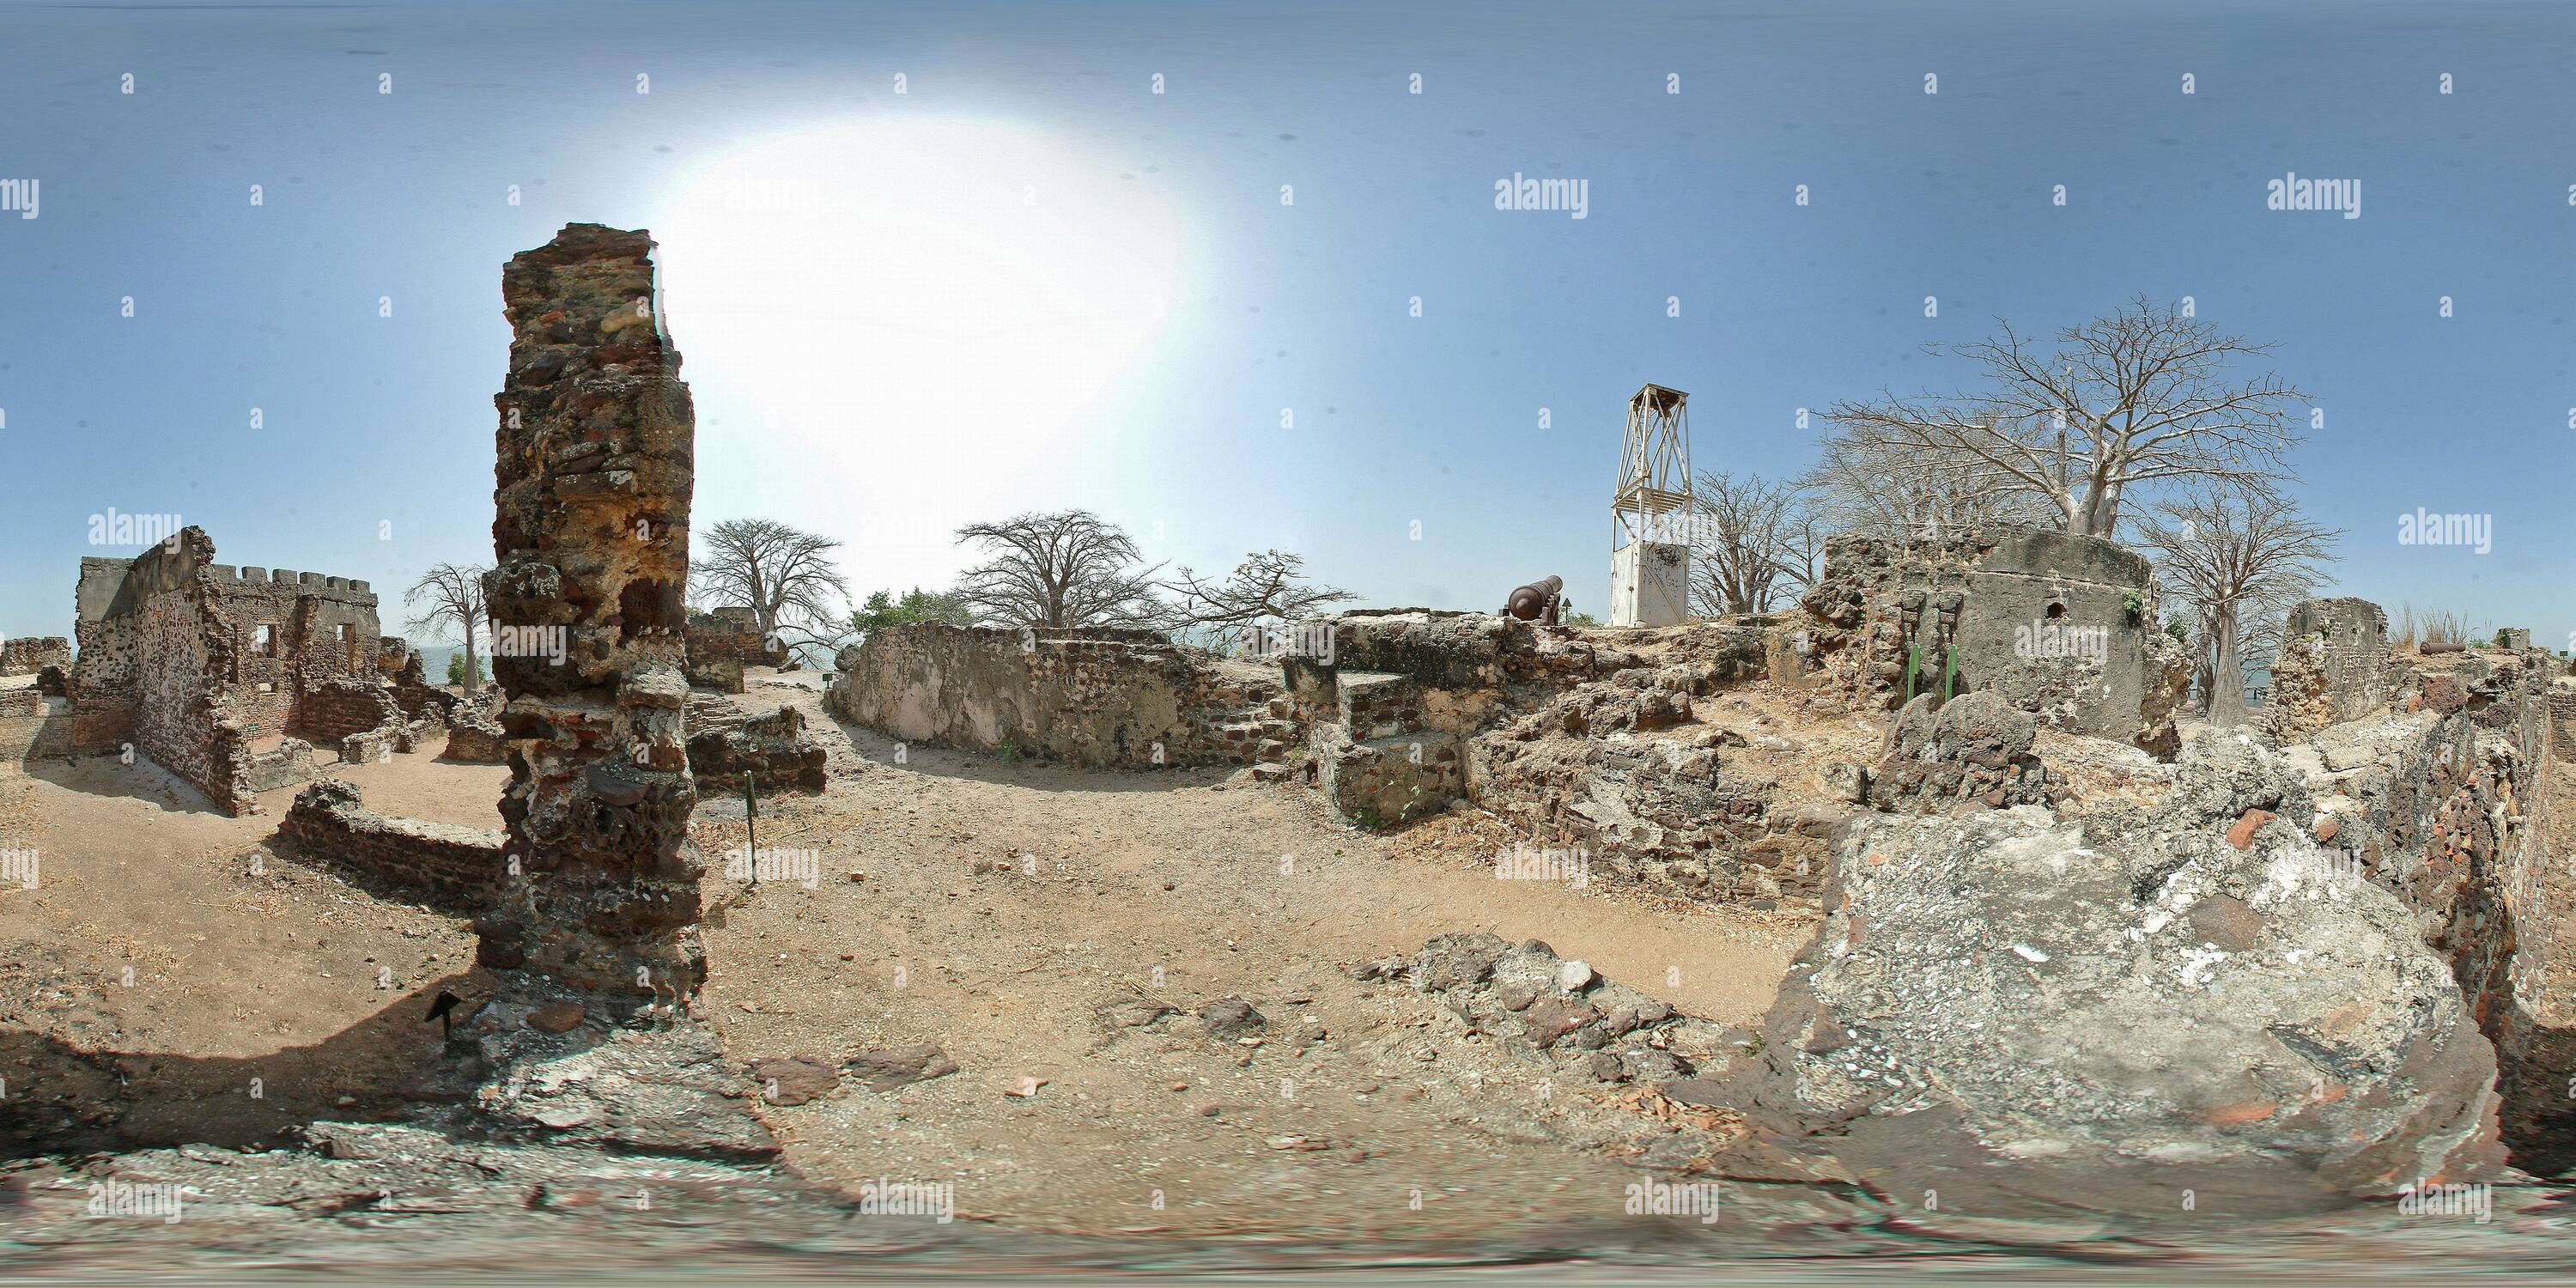 Vista panorámica en 360 grados de La Isla James Gambia 05